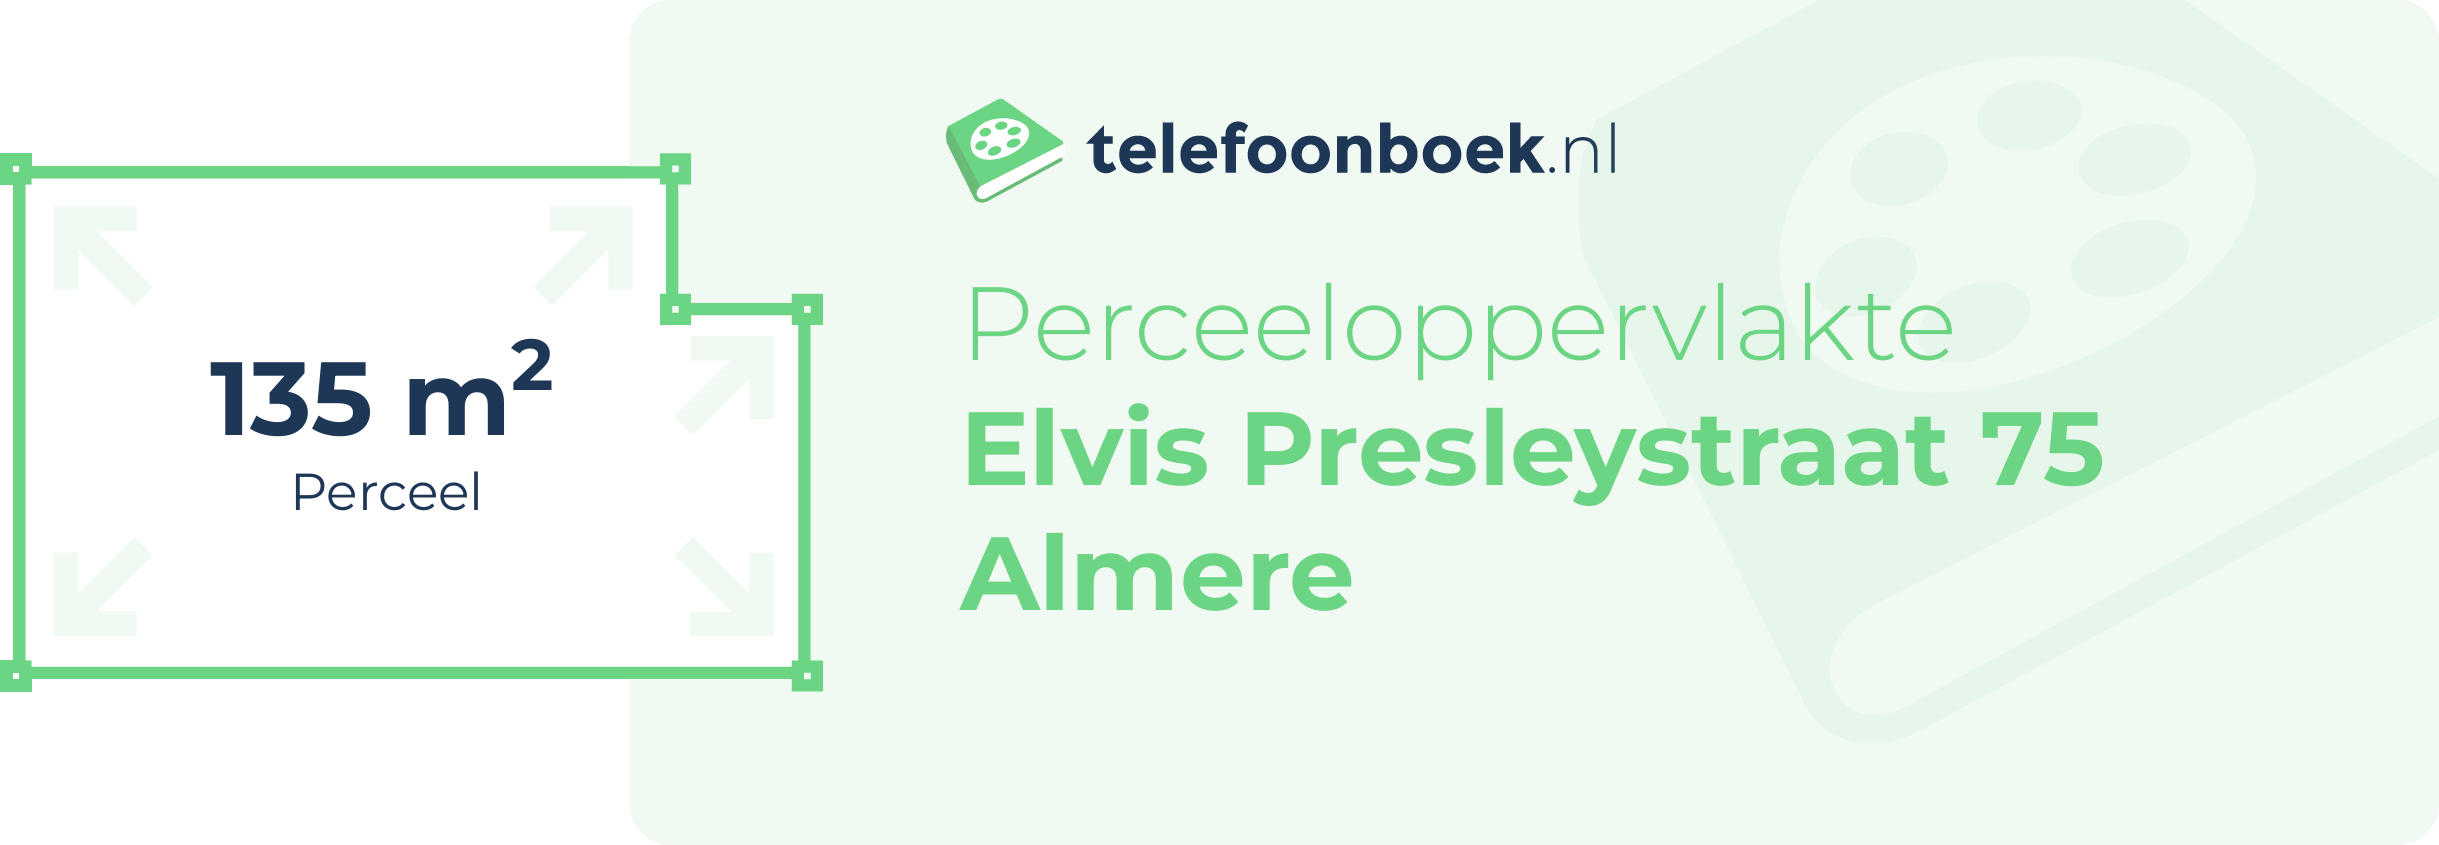 Perceeloppervlakte Elvis Presleystraat 75 Almere